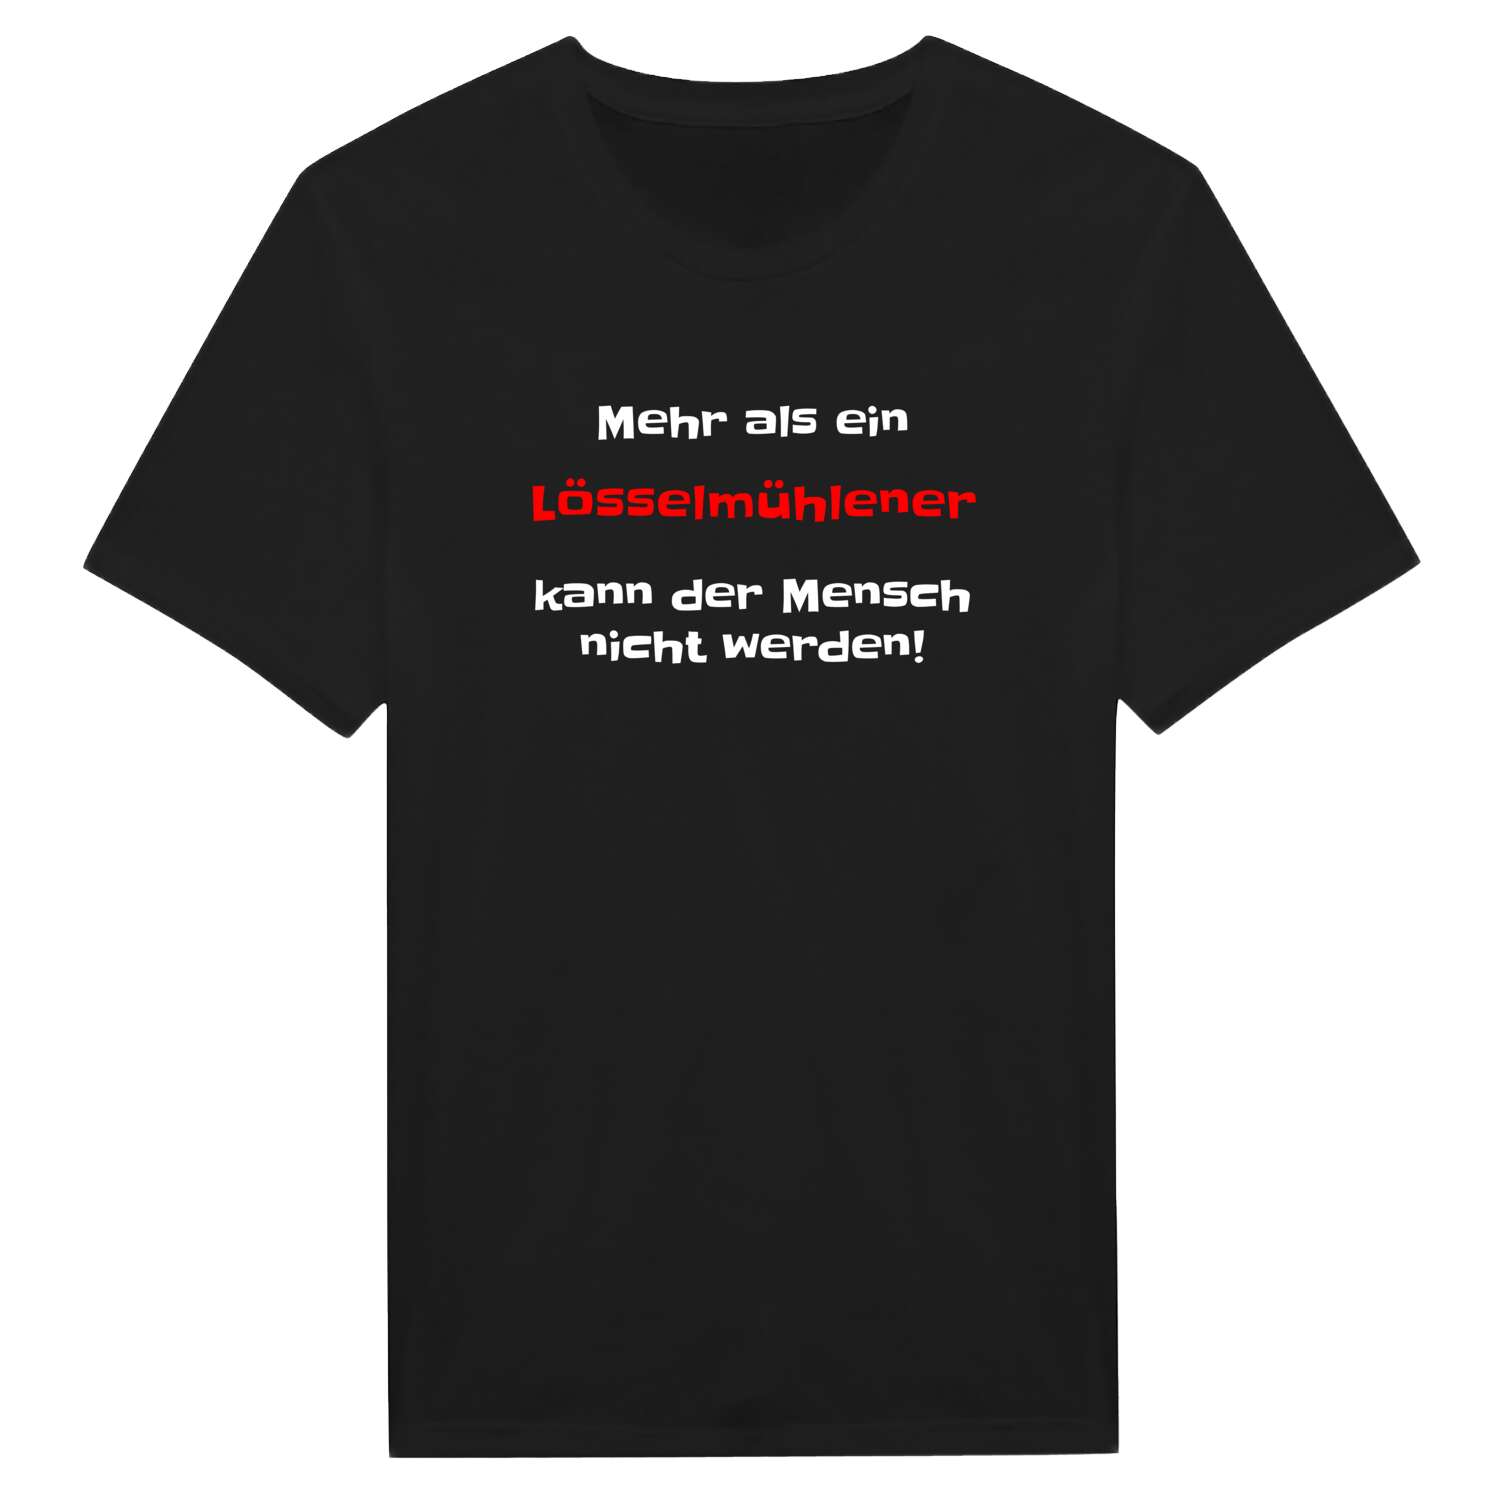 Lösselmühle T-Shirt »Mehr als ein«